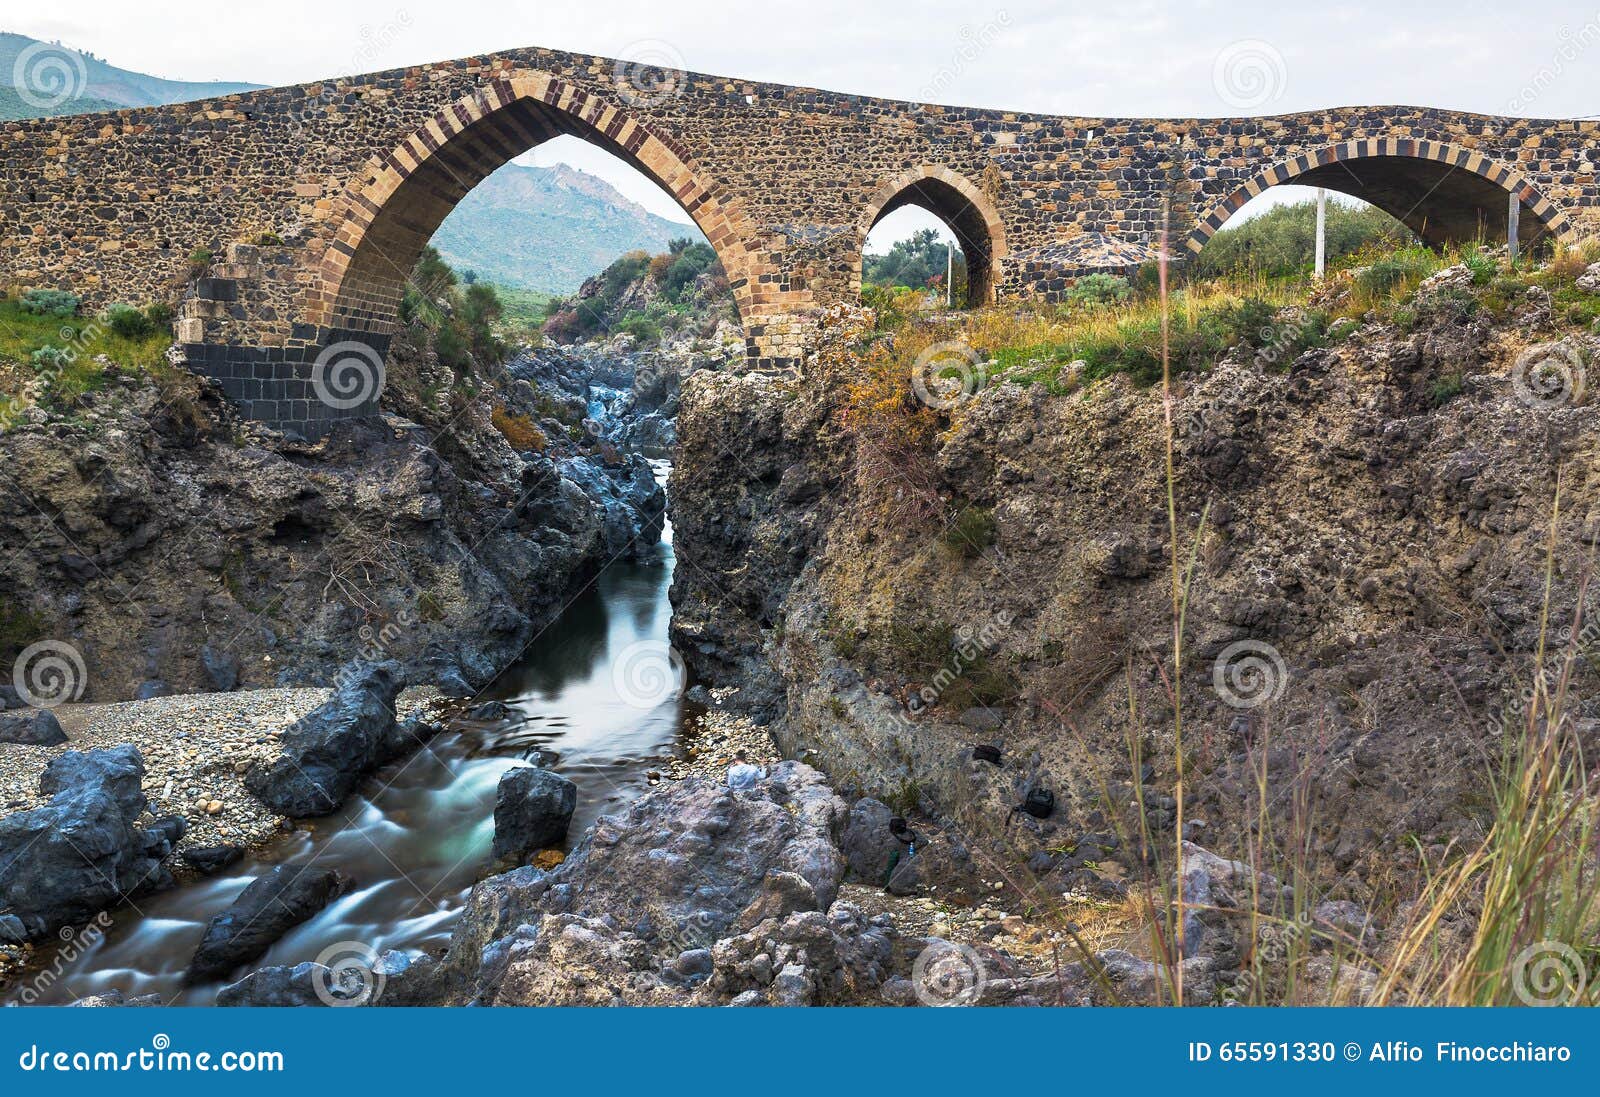 Ponte dei Saraceni stock photo